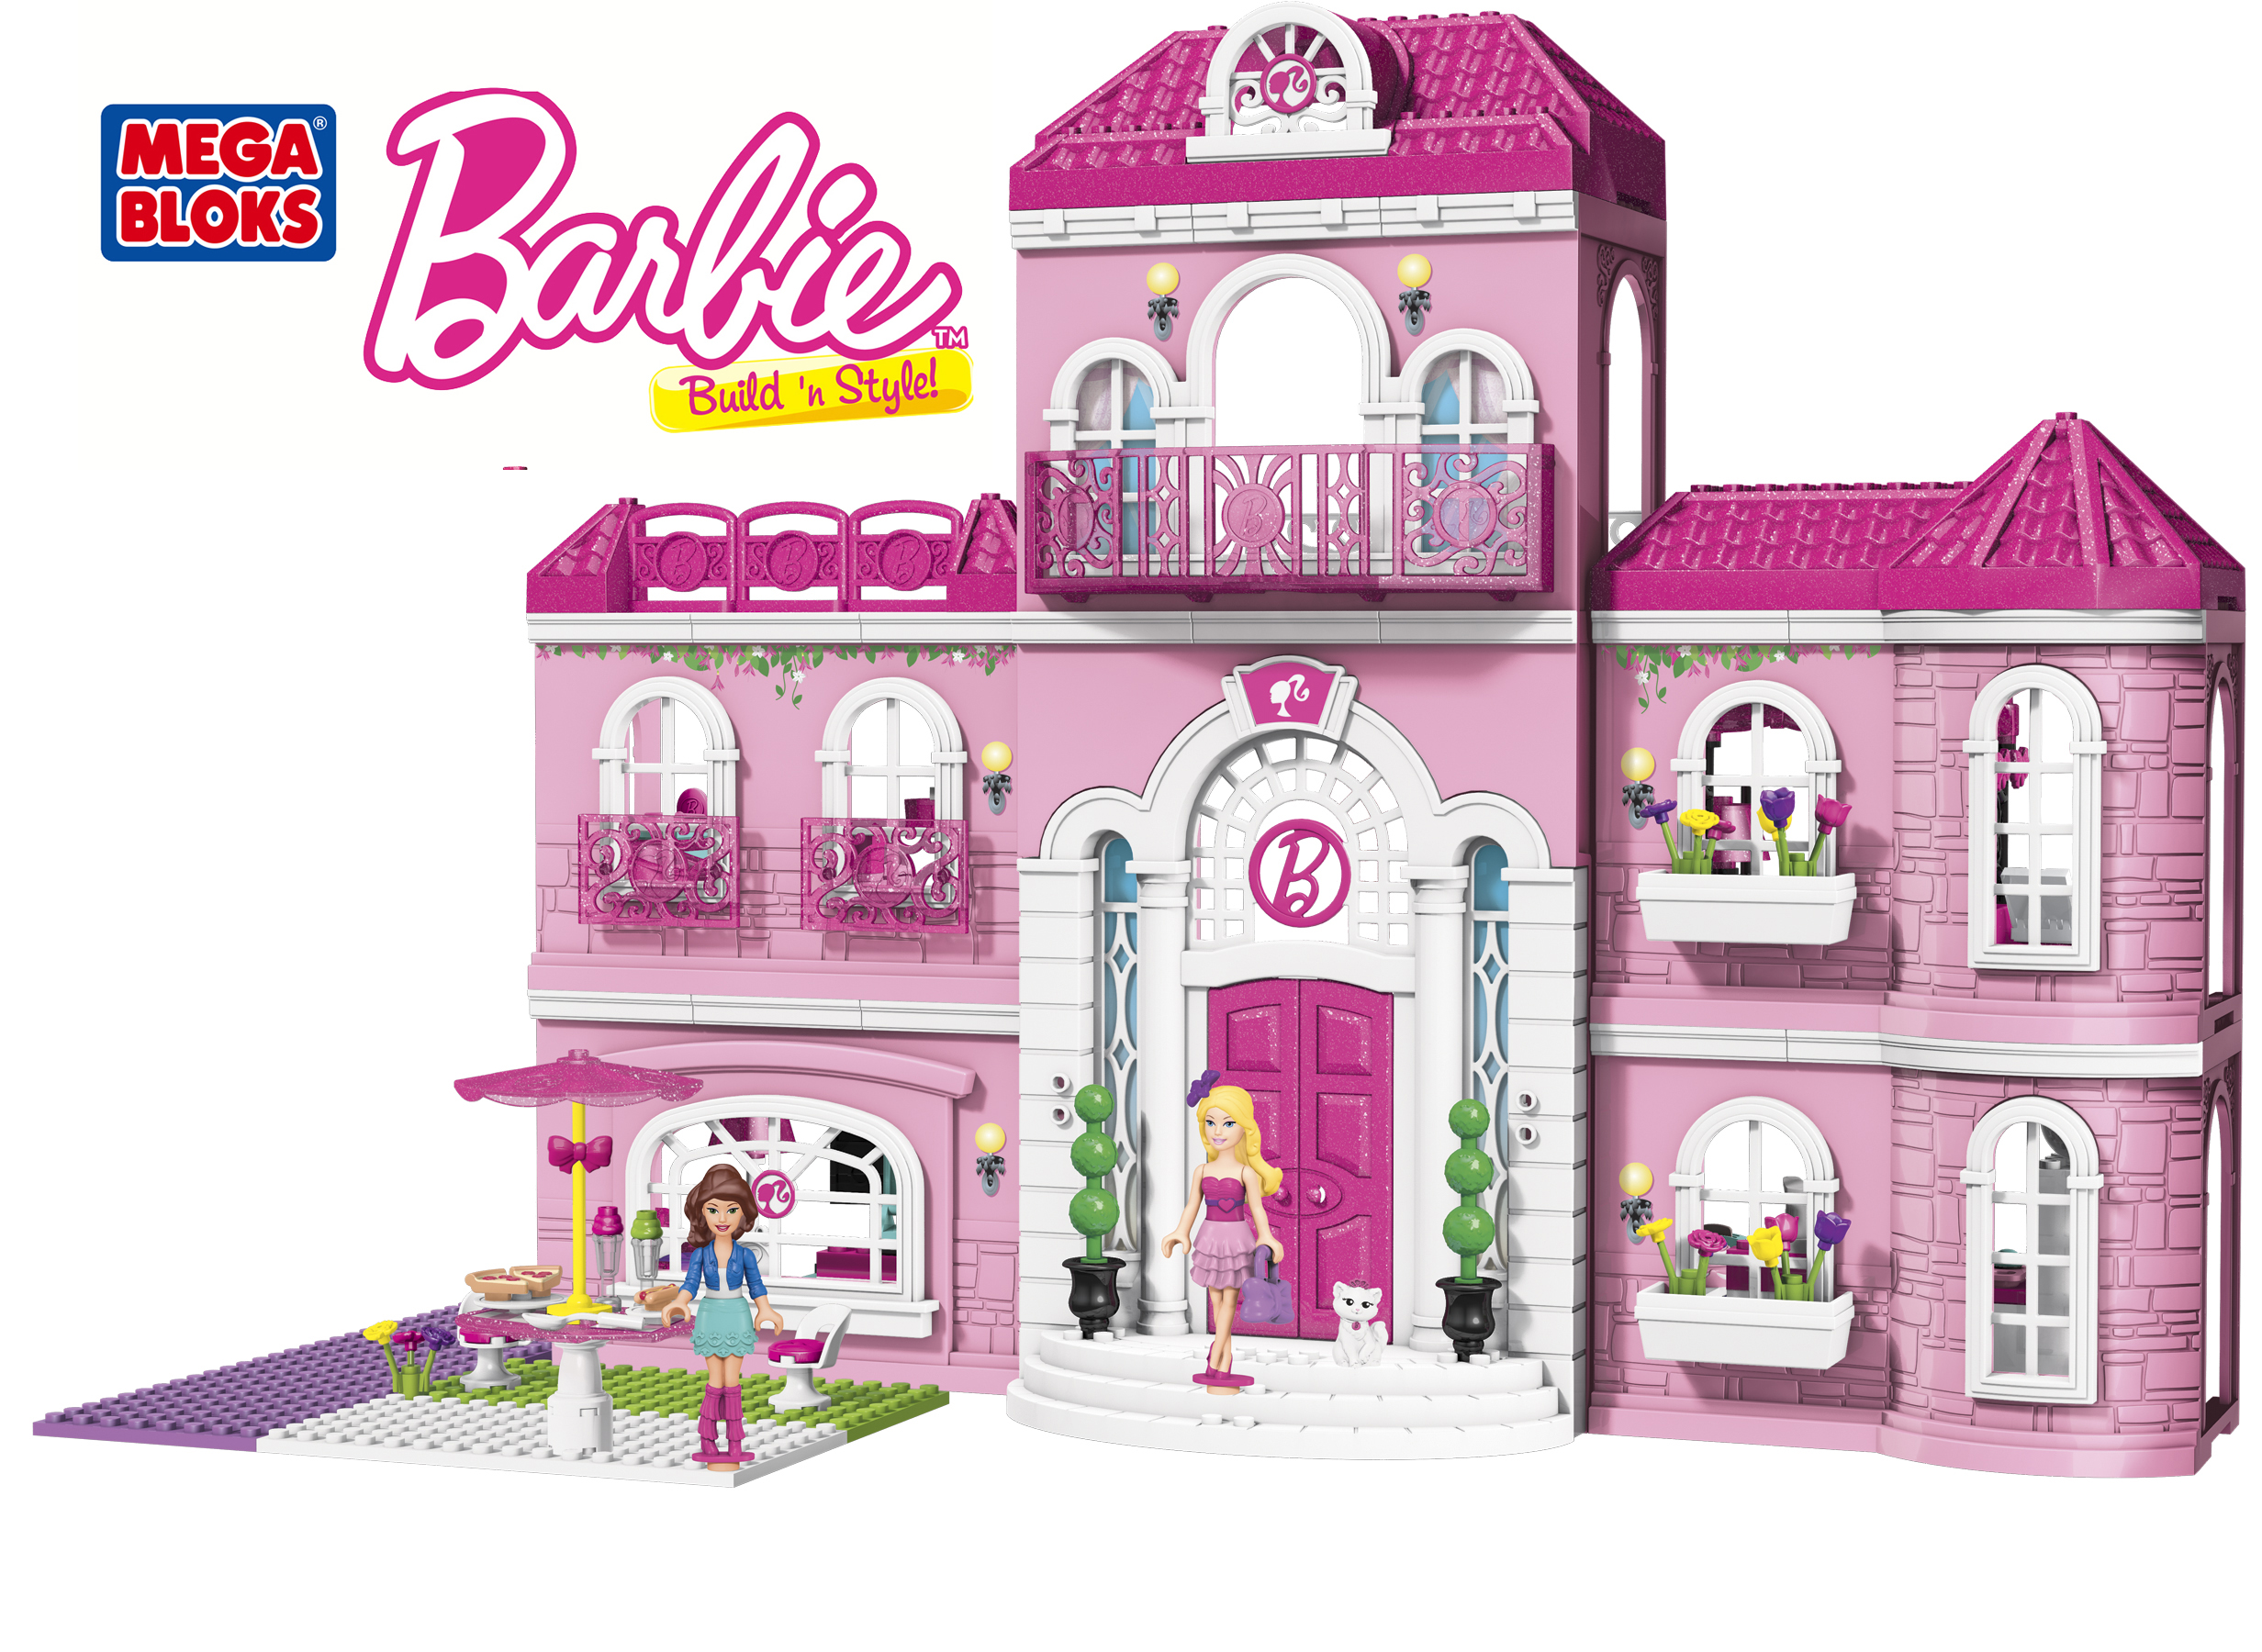 Verward Uitgebreid poort Mega Bloks® Barbie® Build 'n Style Luxury Mansion Review and #Giveaway  #MegaBloksBarbie - Mommies with Cents